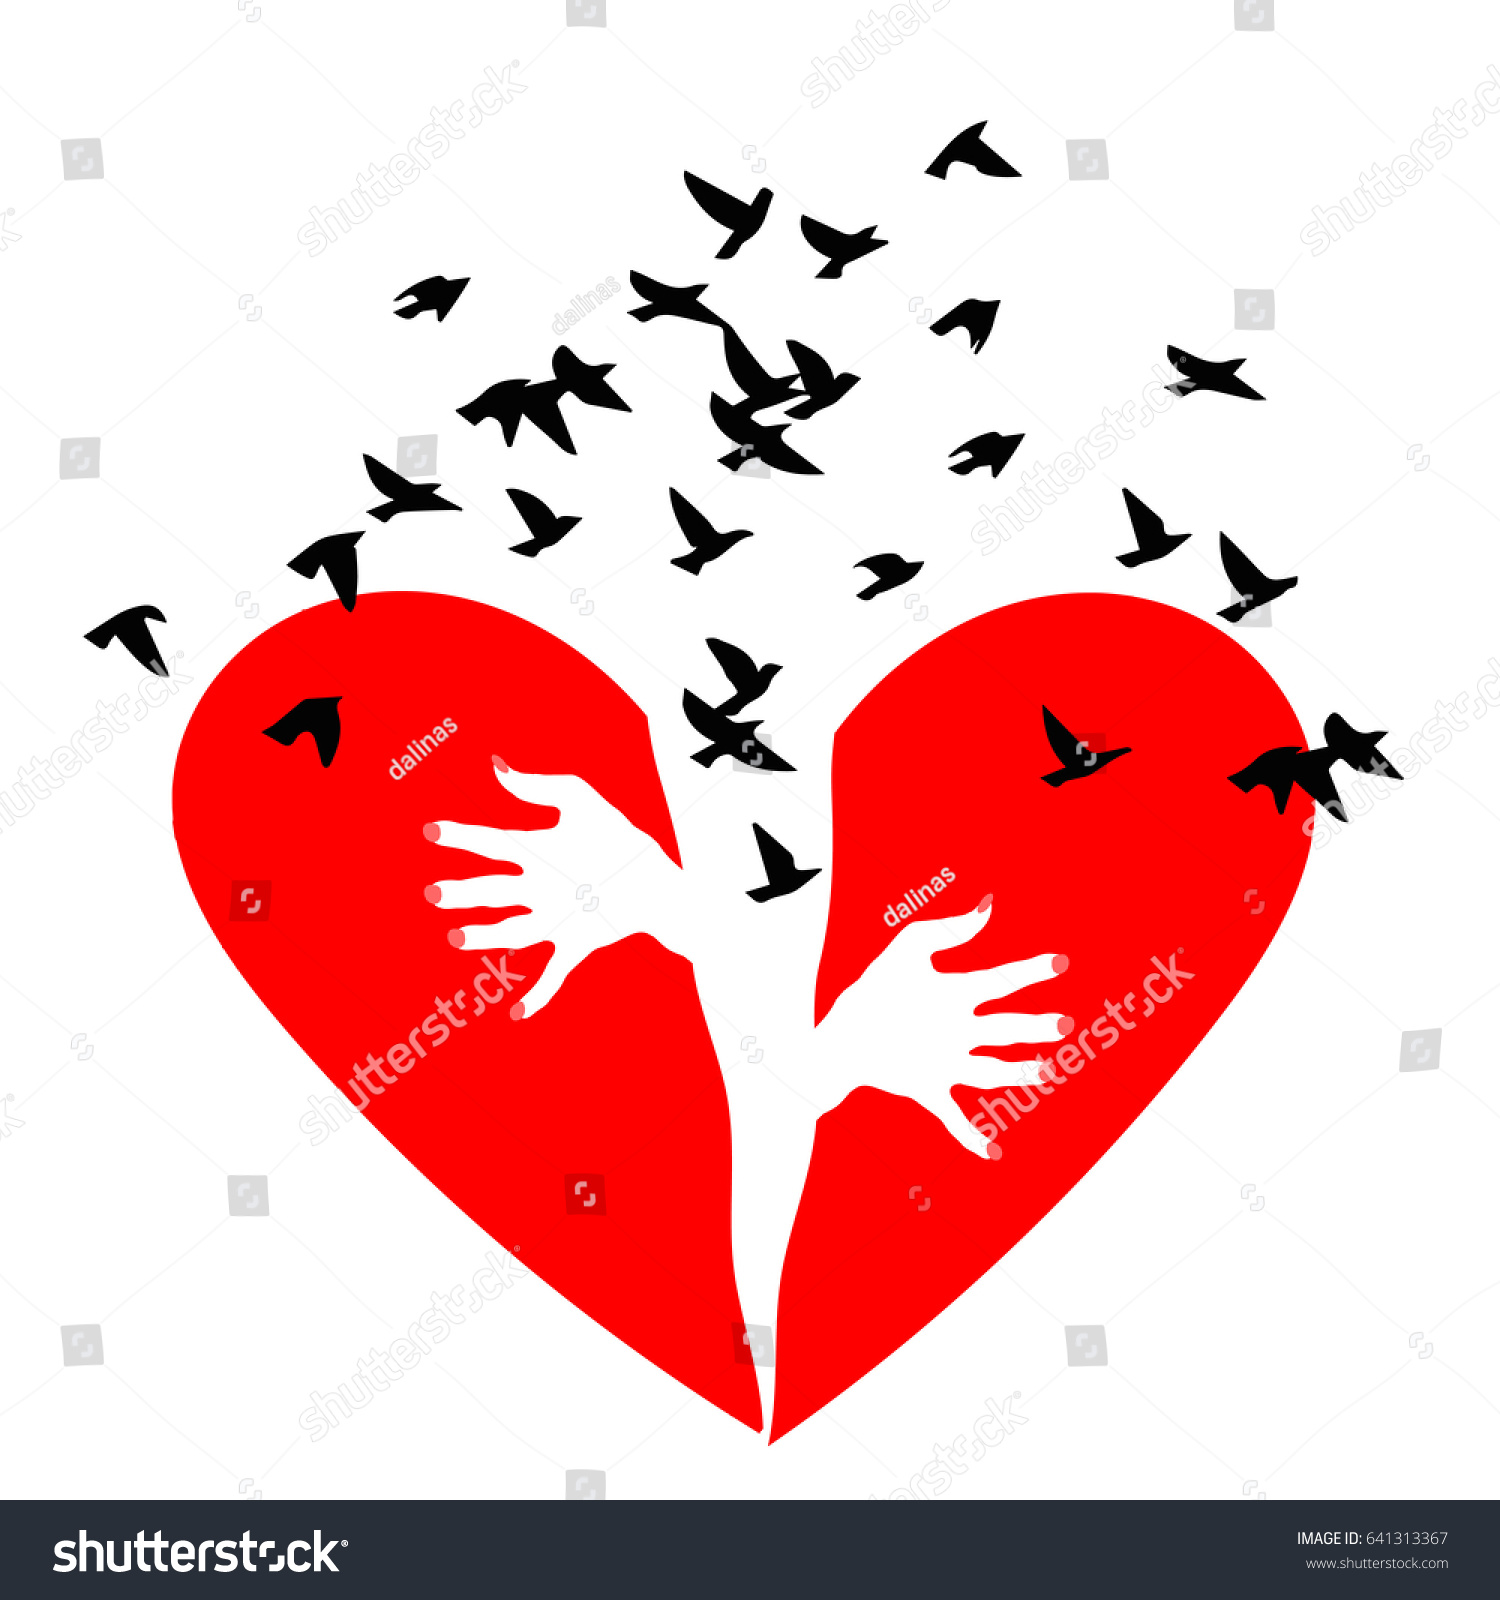 1,742 Broken heart wings Images, Stock Photos & Vectors | Shutterstock